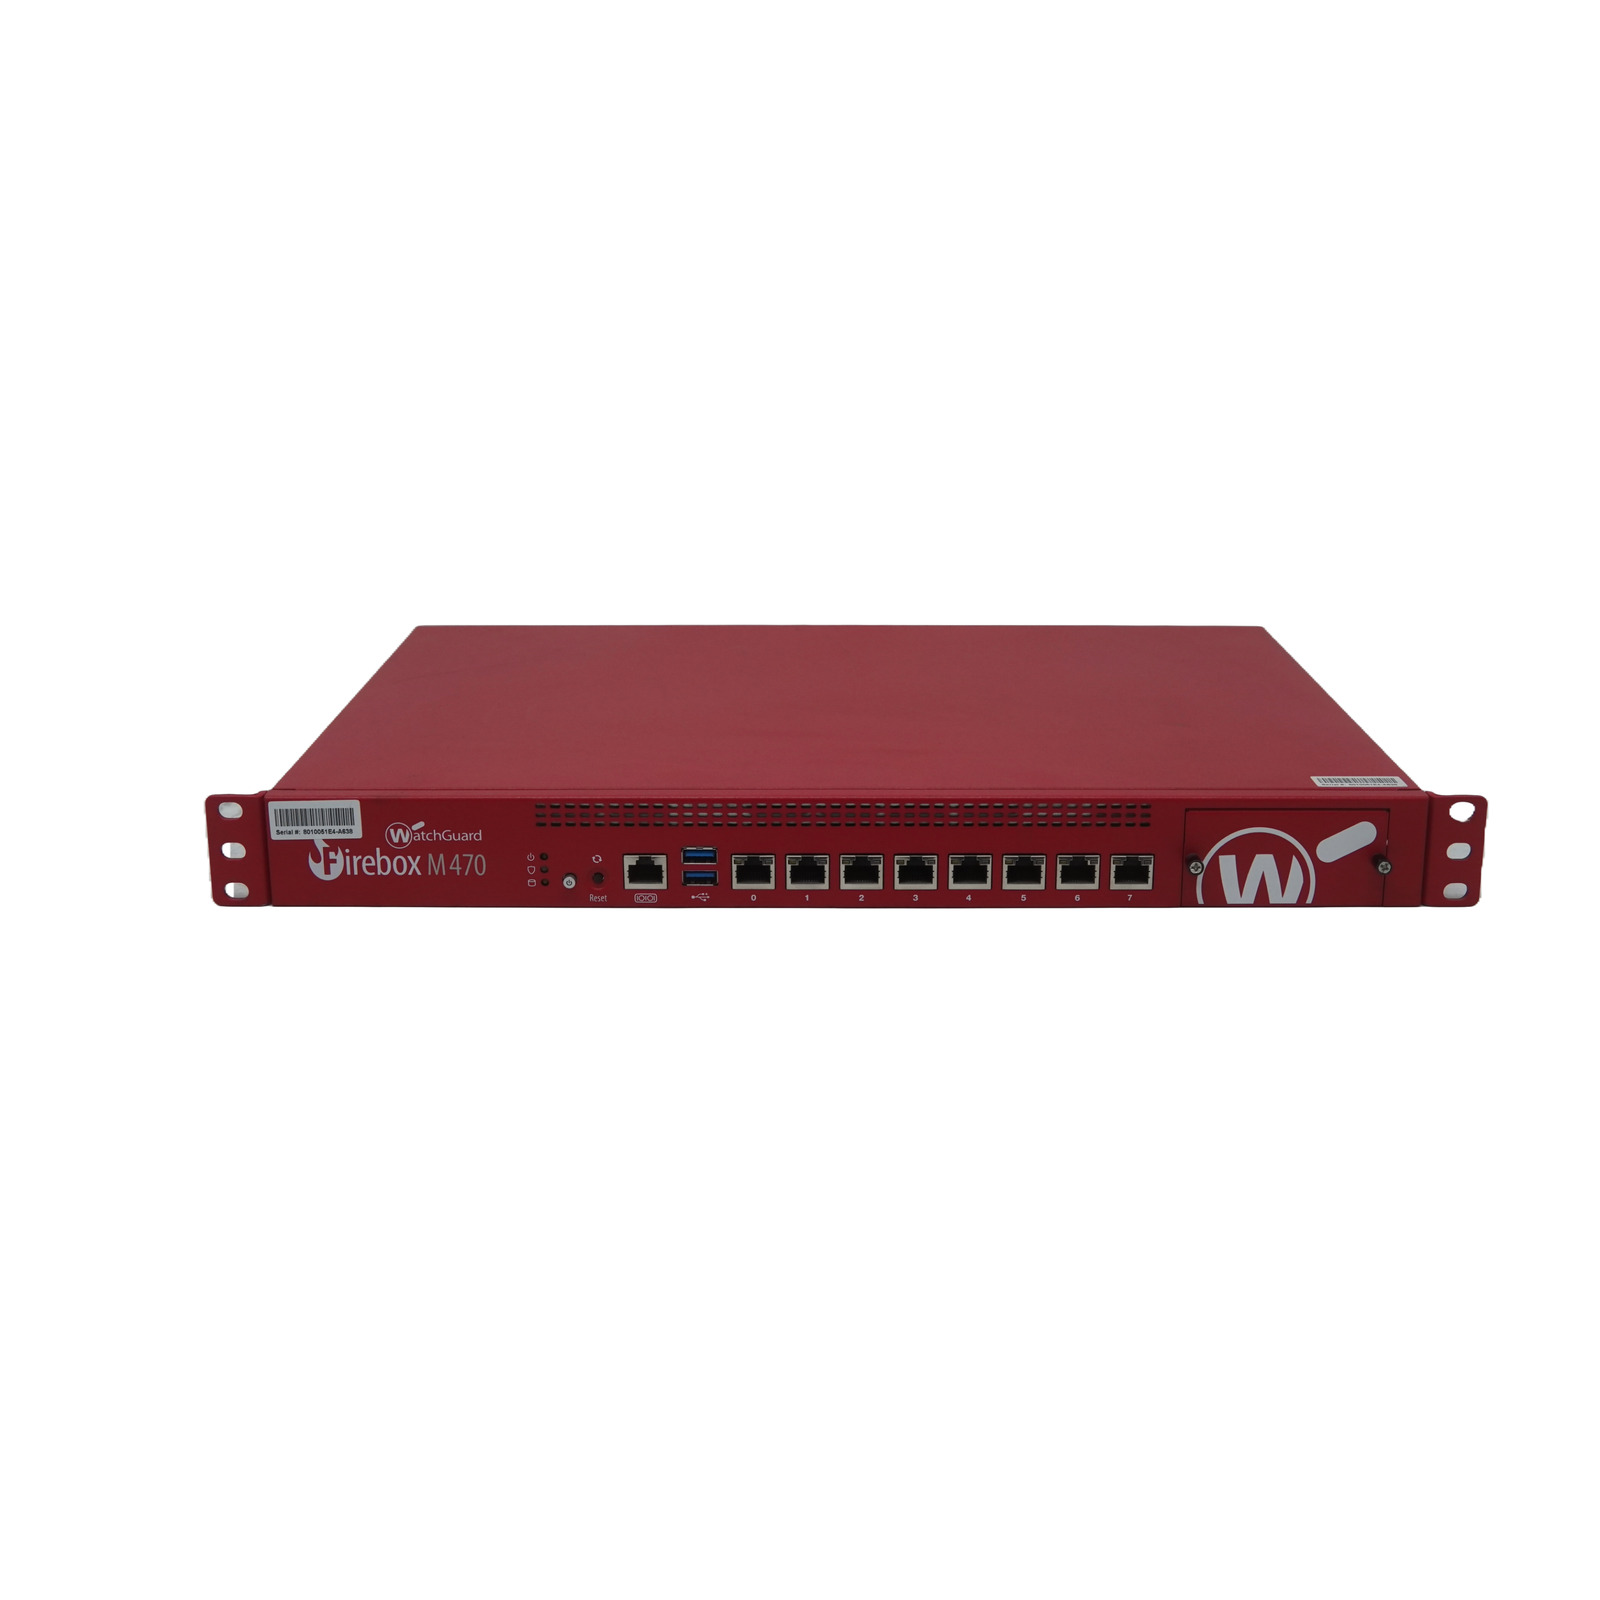 Watchguard Firebox M470 Network Firewall Appliance